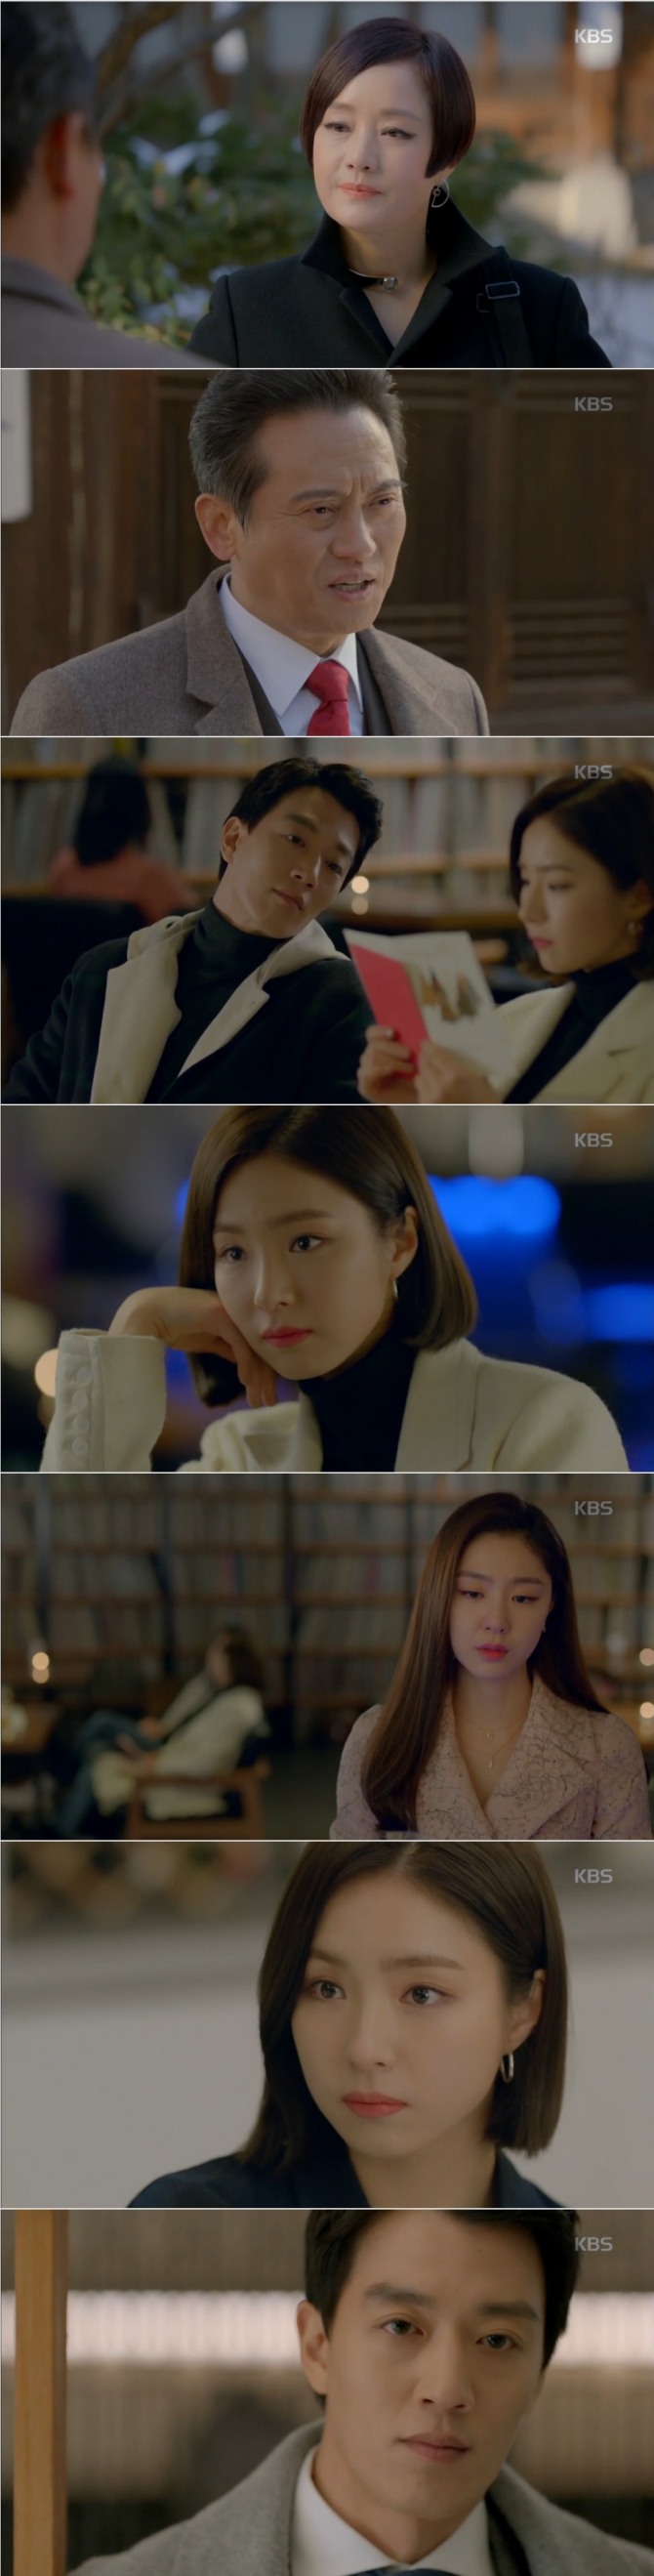 28일 방송된 KBS2 수목드라마 '흑기사' 8회에서는 정해라(신세경)를 질투하는 샤론(서지혜)이 문수호(김래원)로 변신해서 해라 앞에 나타나 긴장감을 증폭시켰다. 사진=KBS 방송 캡처